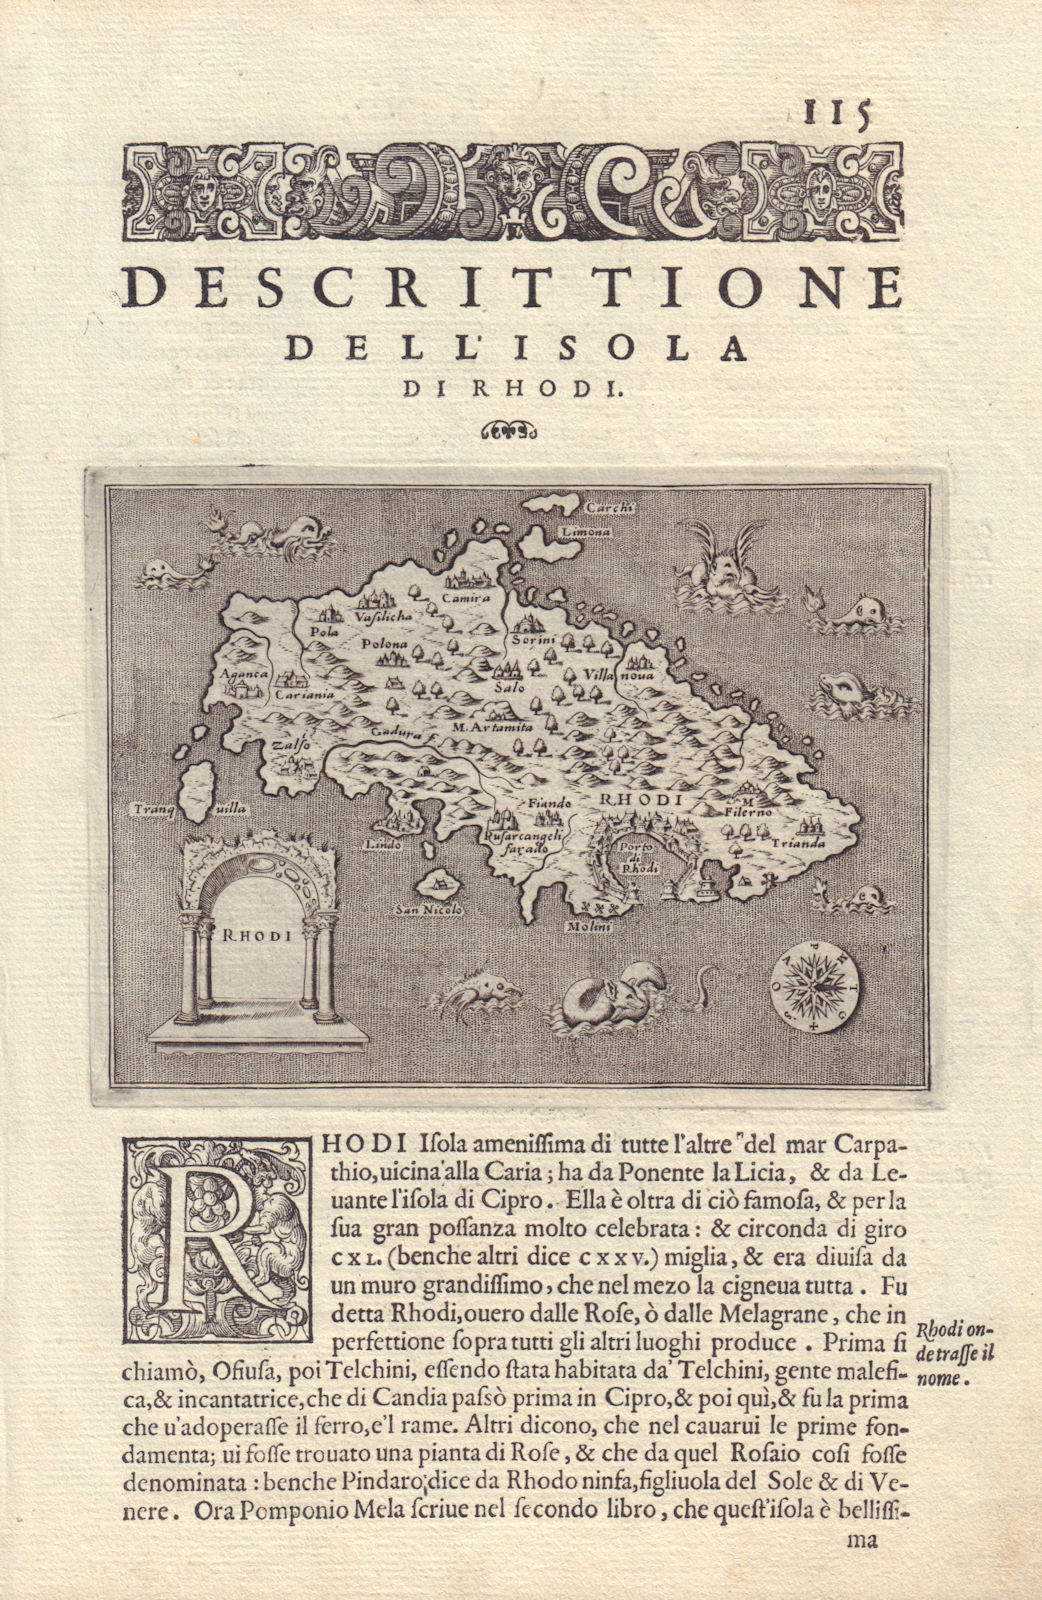 Associate Product Descrittione dell' Isola di Rhodi. PORCACCHI. Rhodes Dodecanese 1590 old map